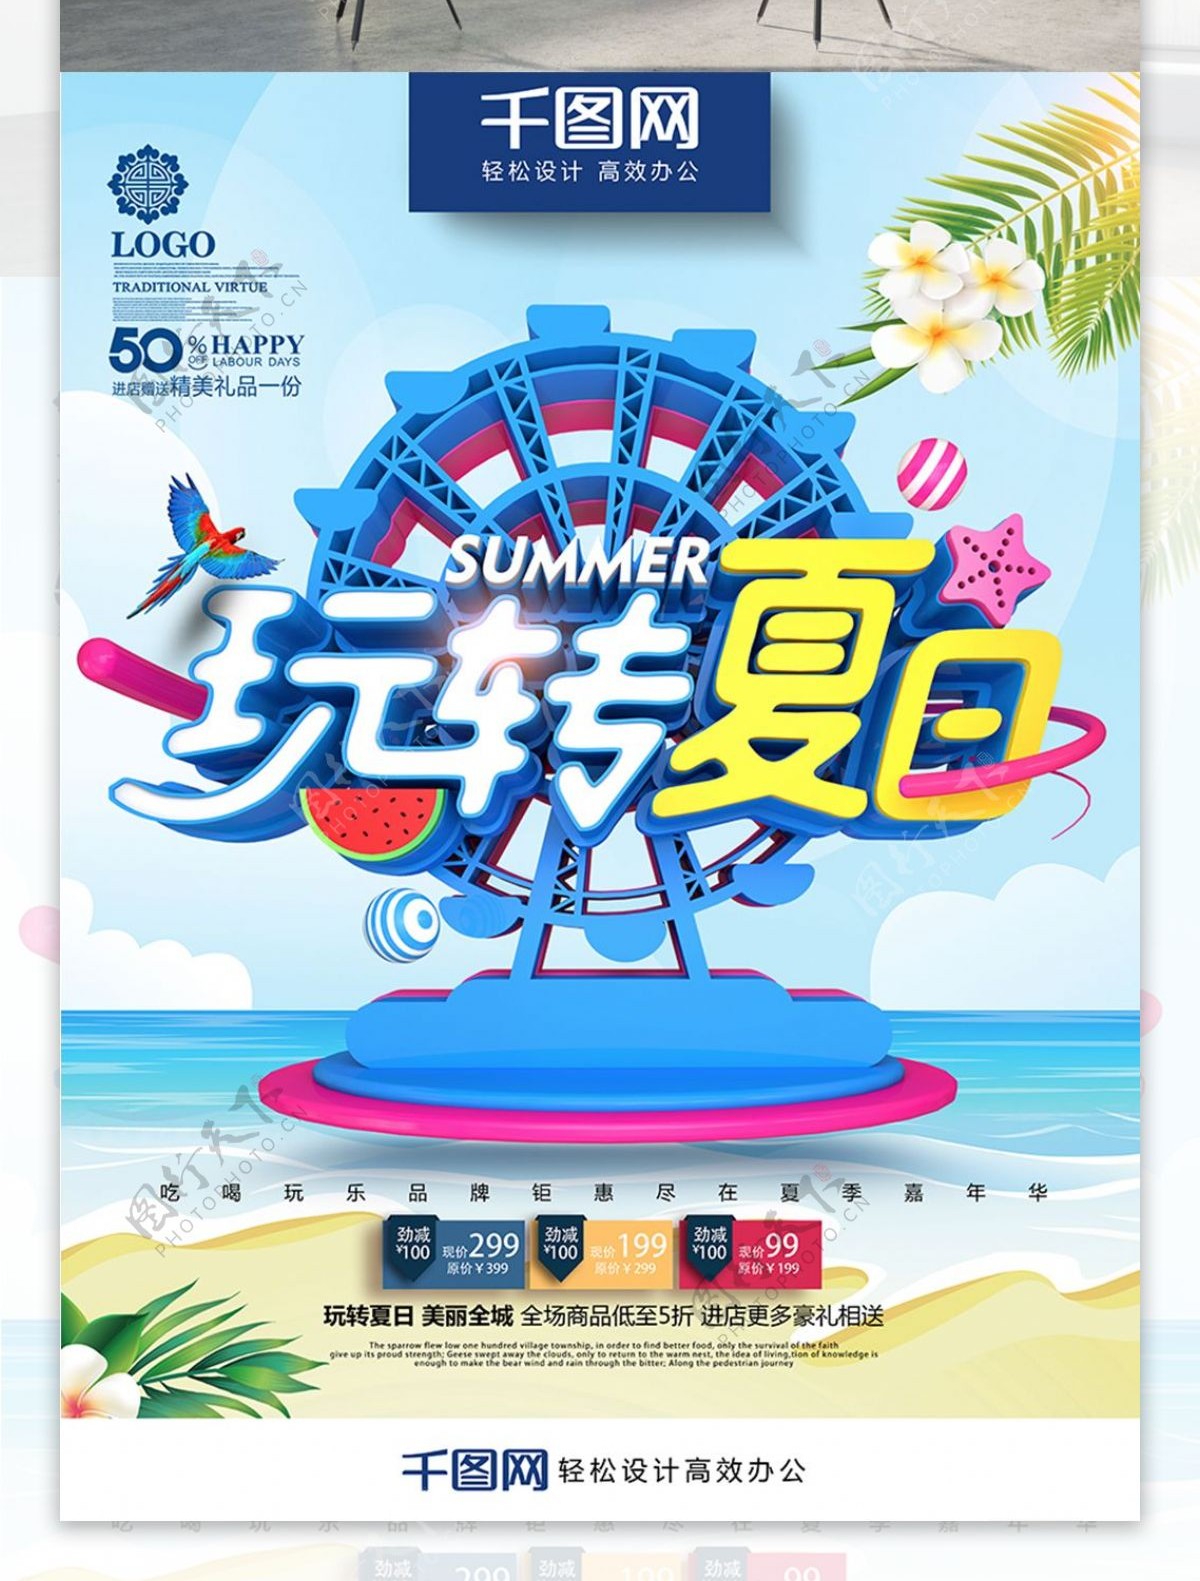 创意摩天轮玩转夏日夏季商场超市促销海报